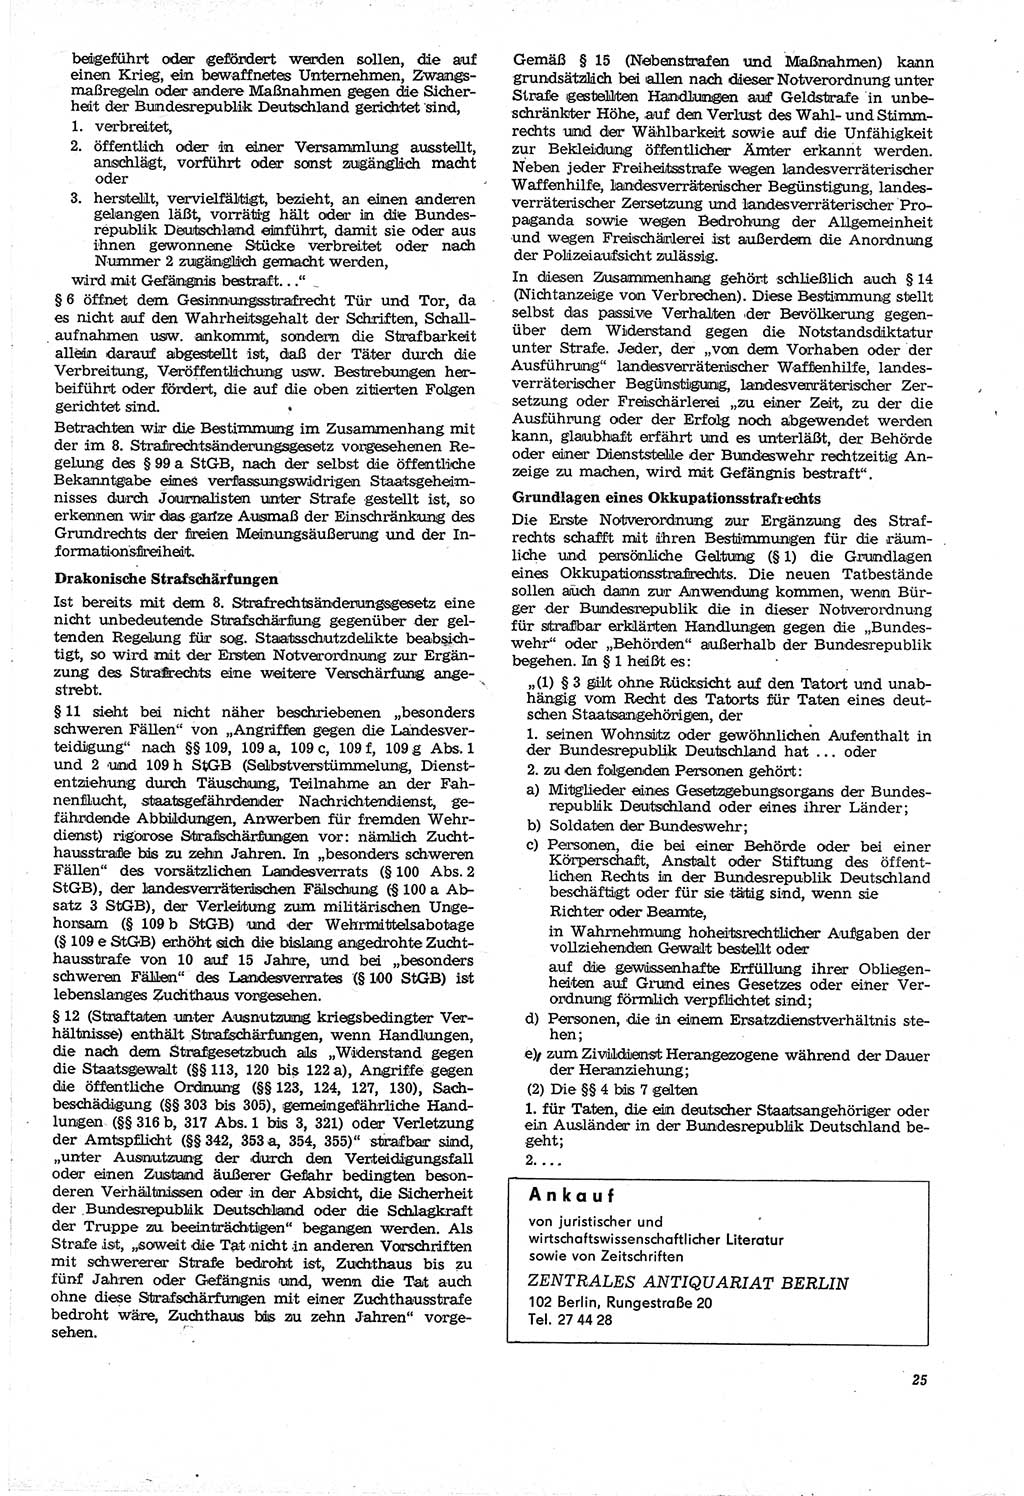 Neue Justiz (NJ), Zeitschrift für Recht und Rechtswissenschaft [Deutsche Demokratische Republik (DDR)], 21. Jahrgang 1967, Seite 25 (NJ DDR 1967, S. 25)